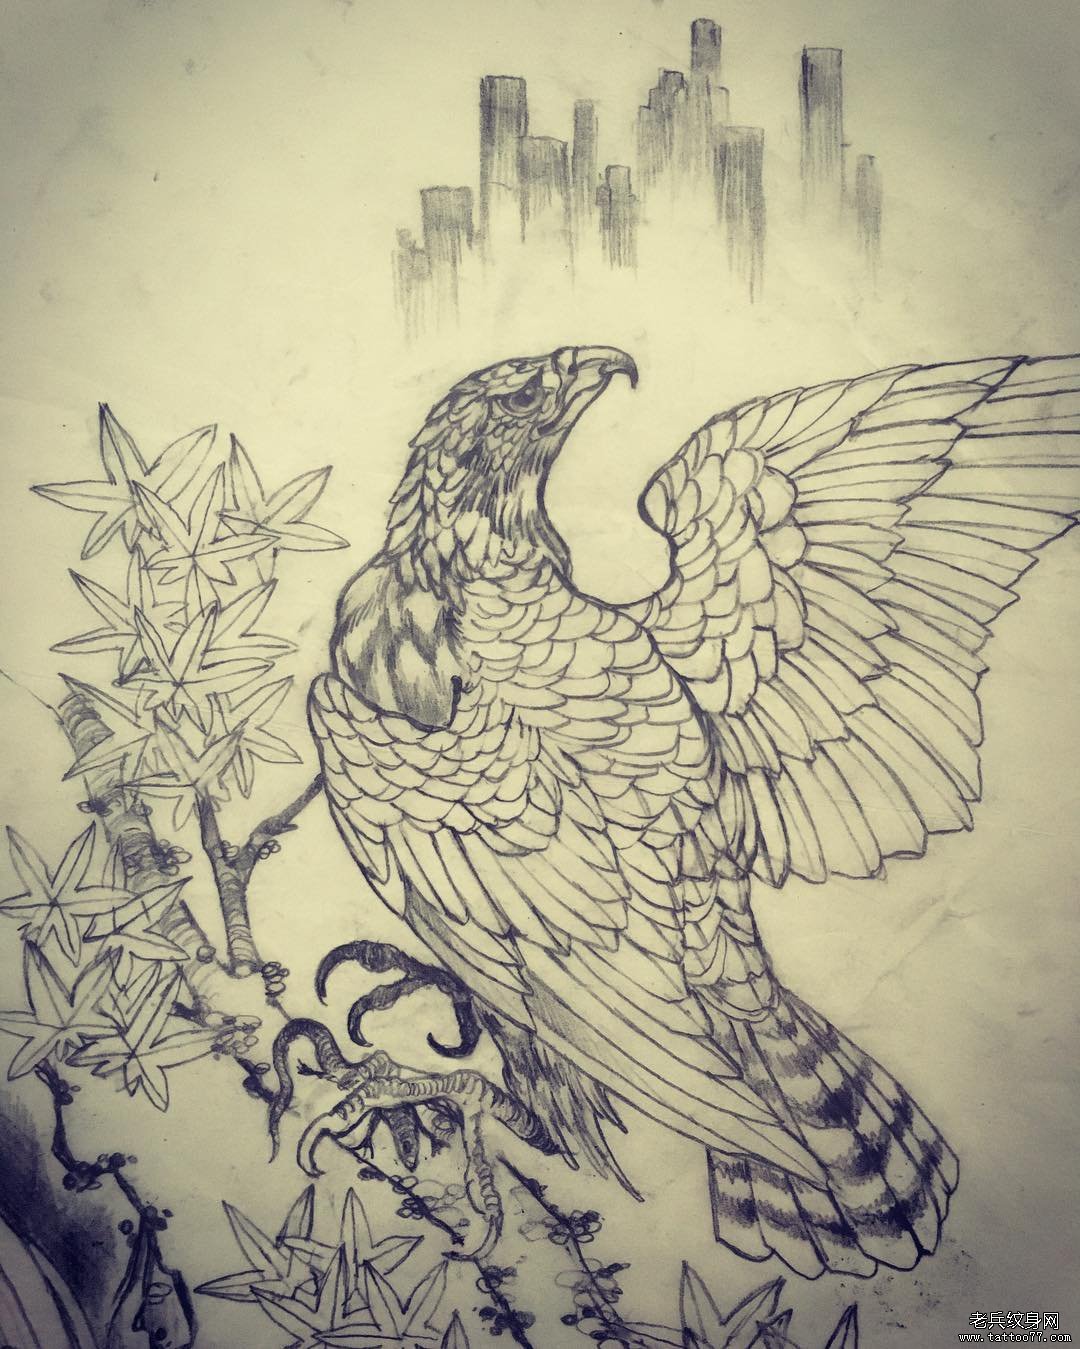 传统老鹰枫树纹身图案手稿